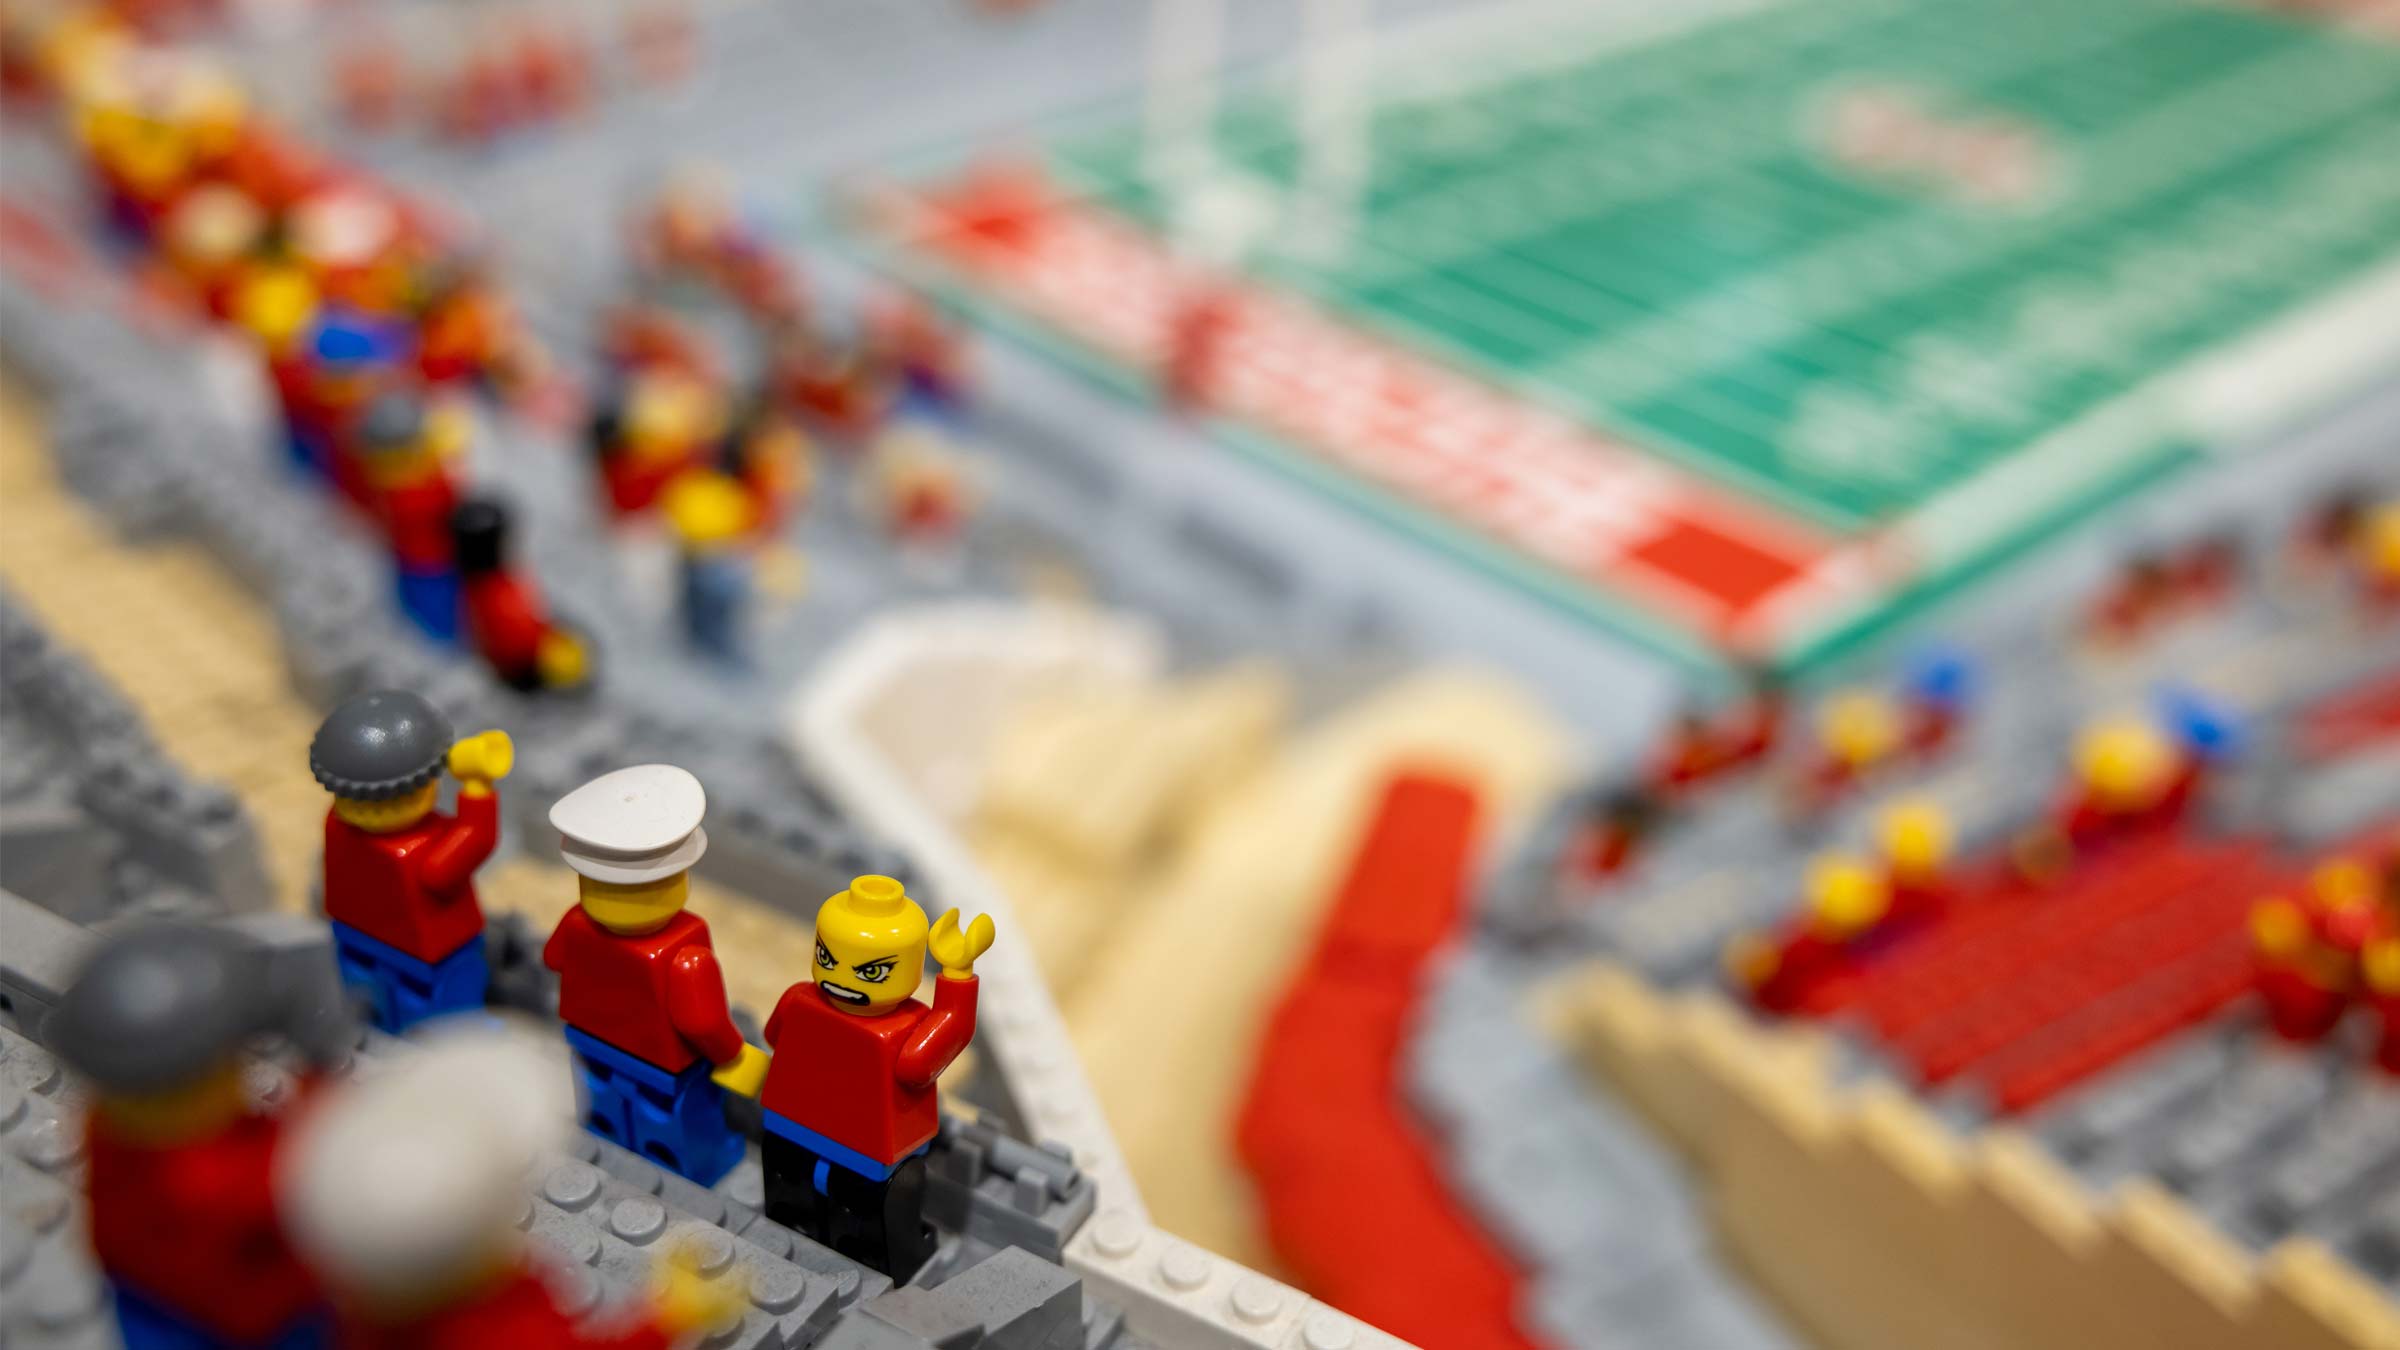 Lego figurines in the Lego replica of Ohio Stadium